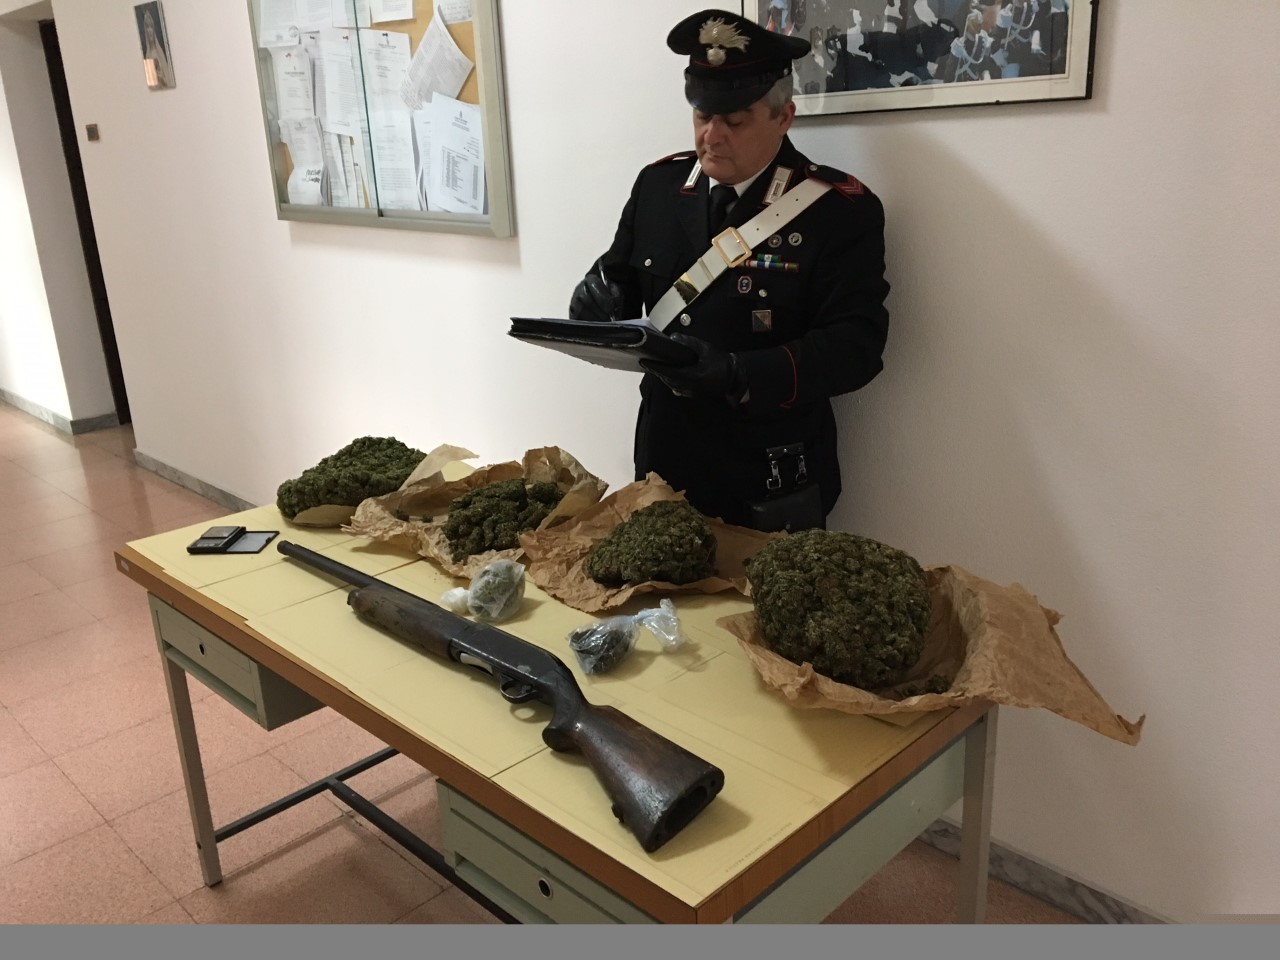 Trovato in possesso di droga e armi: arrestato dai Carabinieri